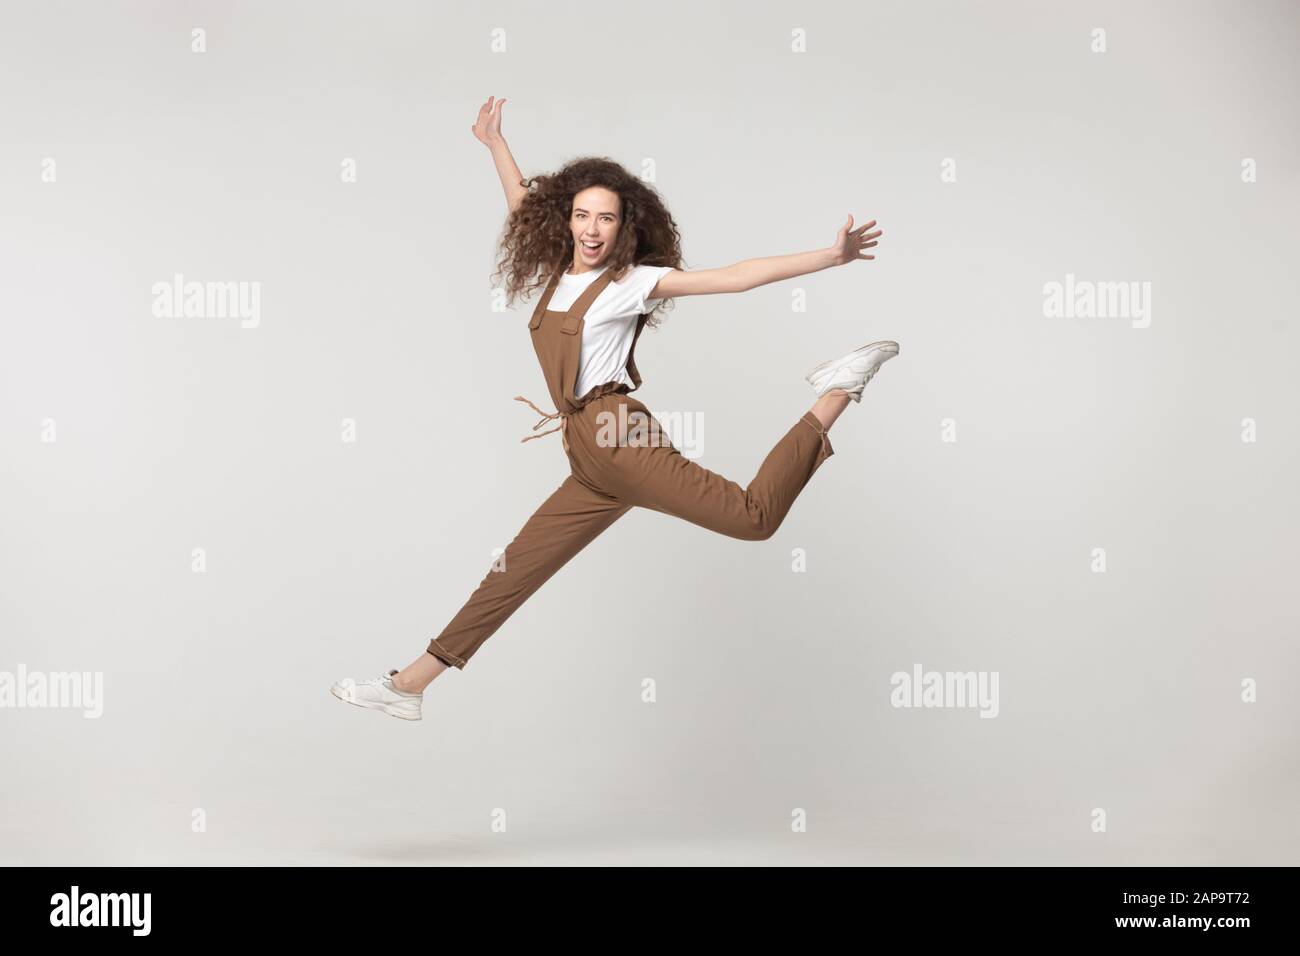 Feliz señorita volando, saltando con las manos elevadas. Foto de stock